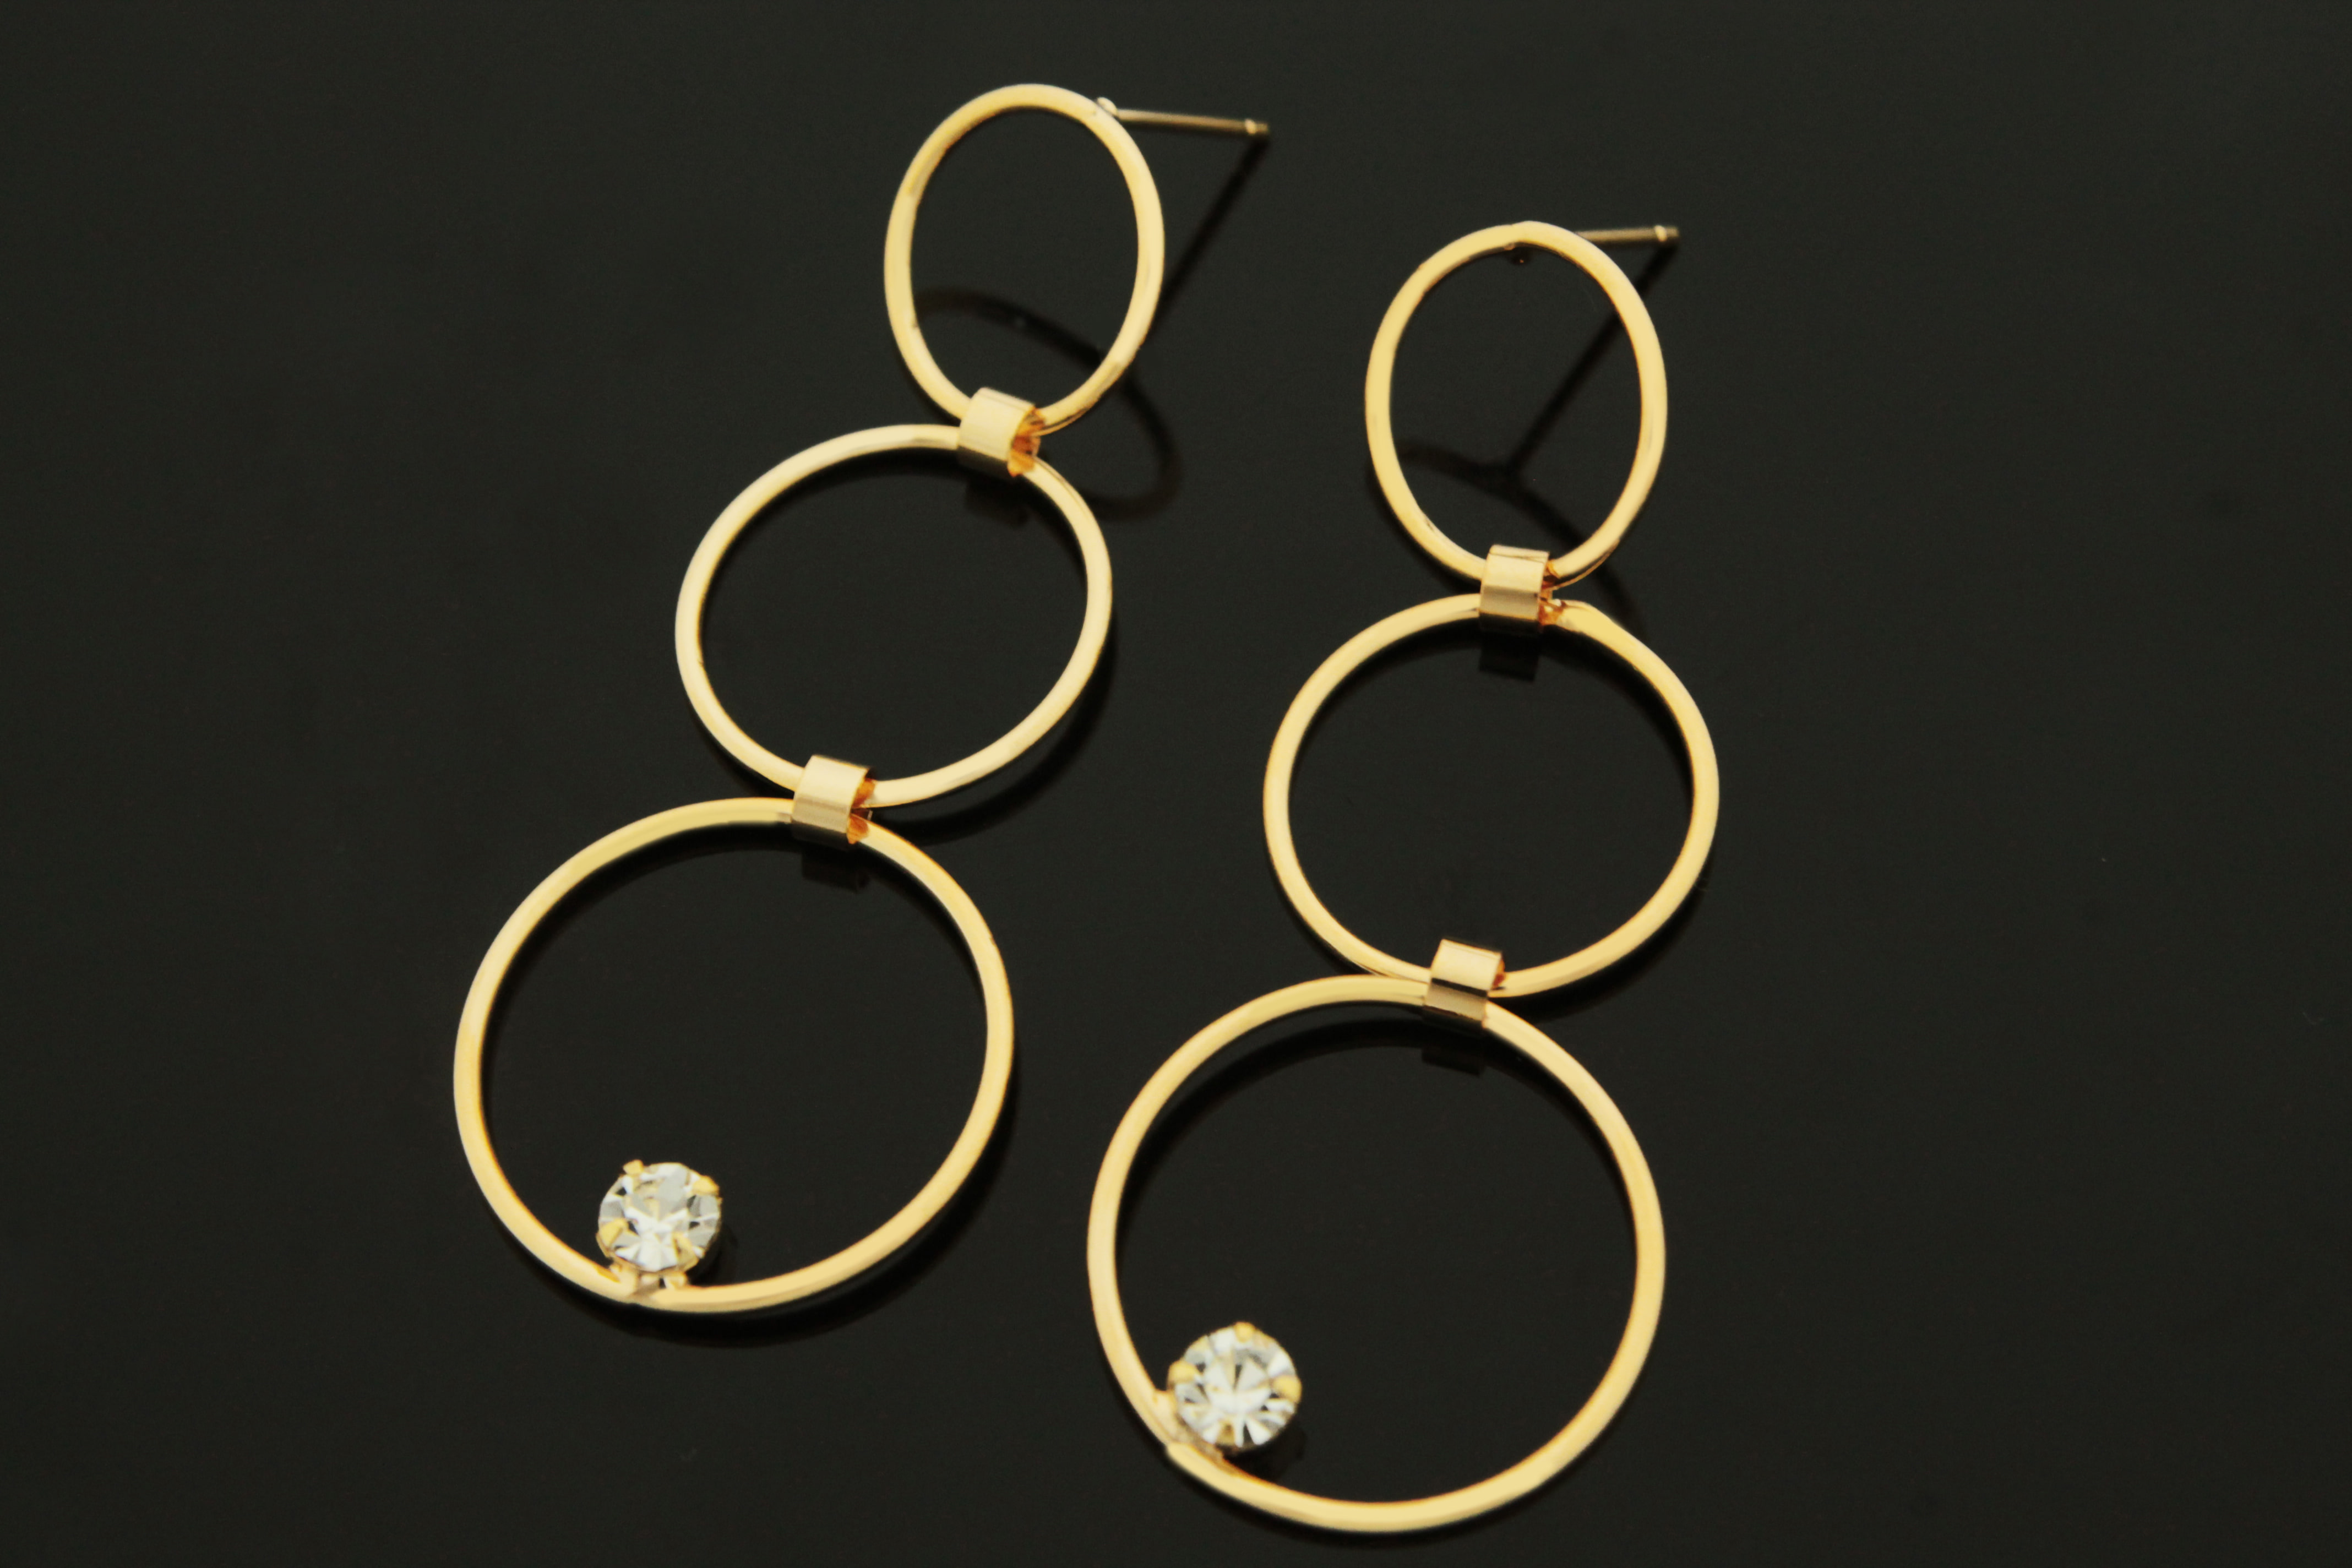 트리플 링 큐빅 귀걸이, T62-P7, 2개 (1쌍), 골드도금, 브라스 포스트, 무니켈, 48x19mm, 두께 1mm